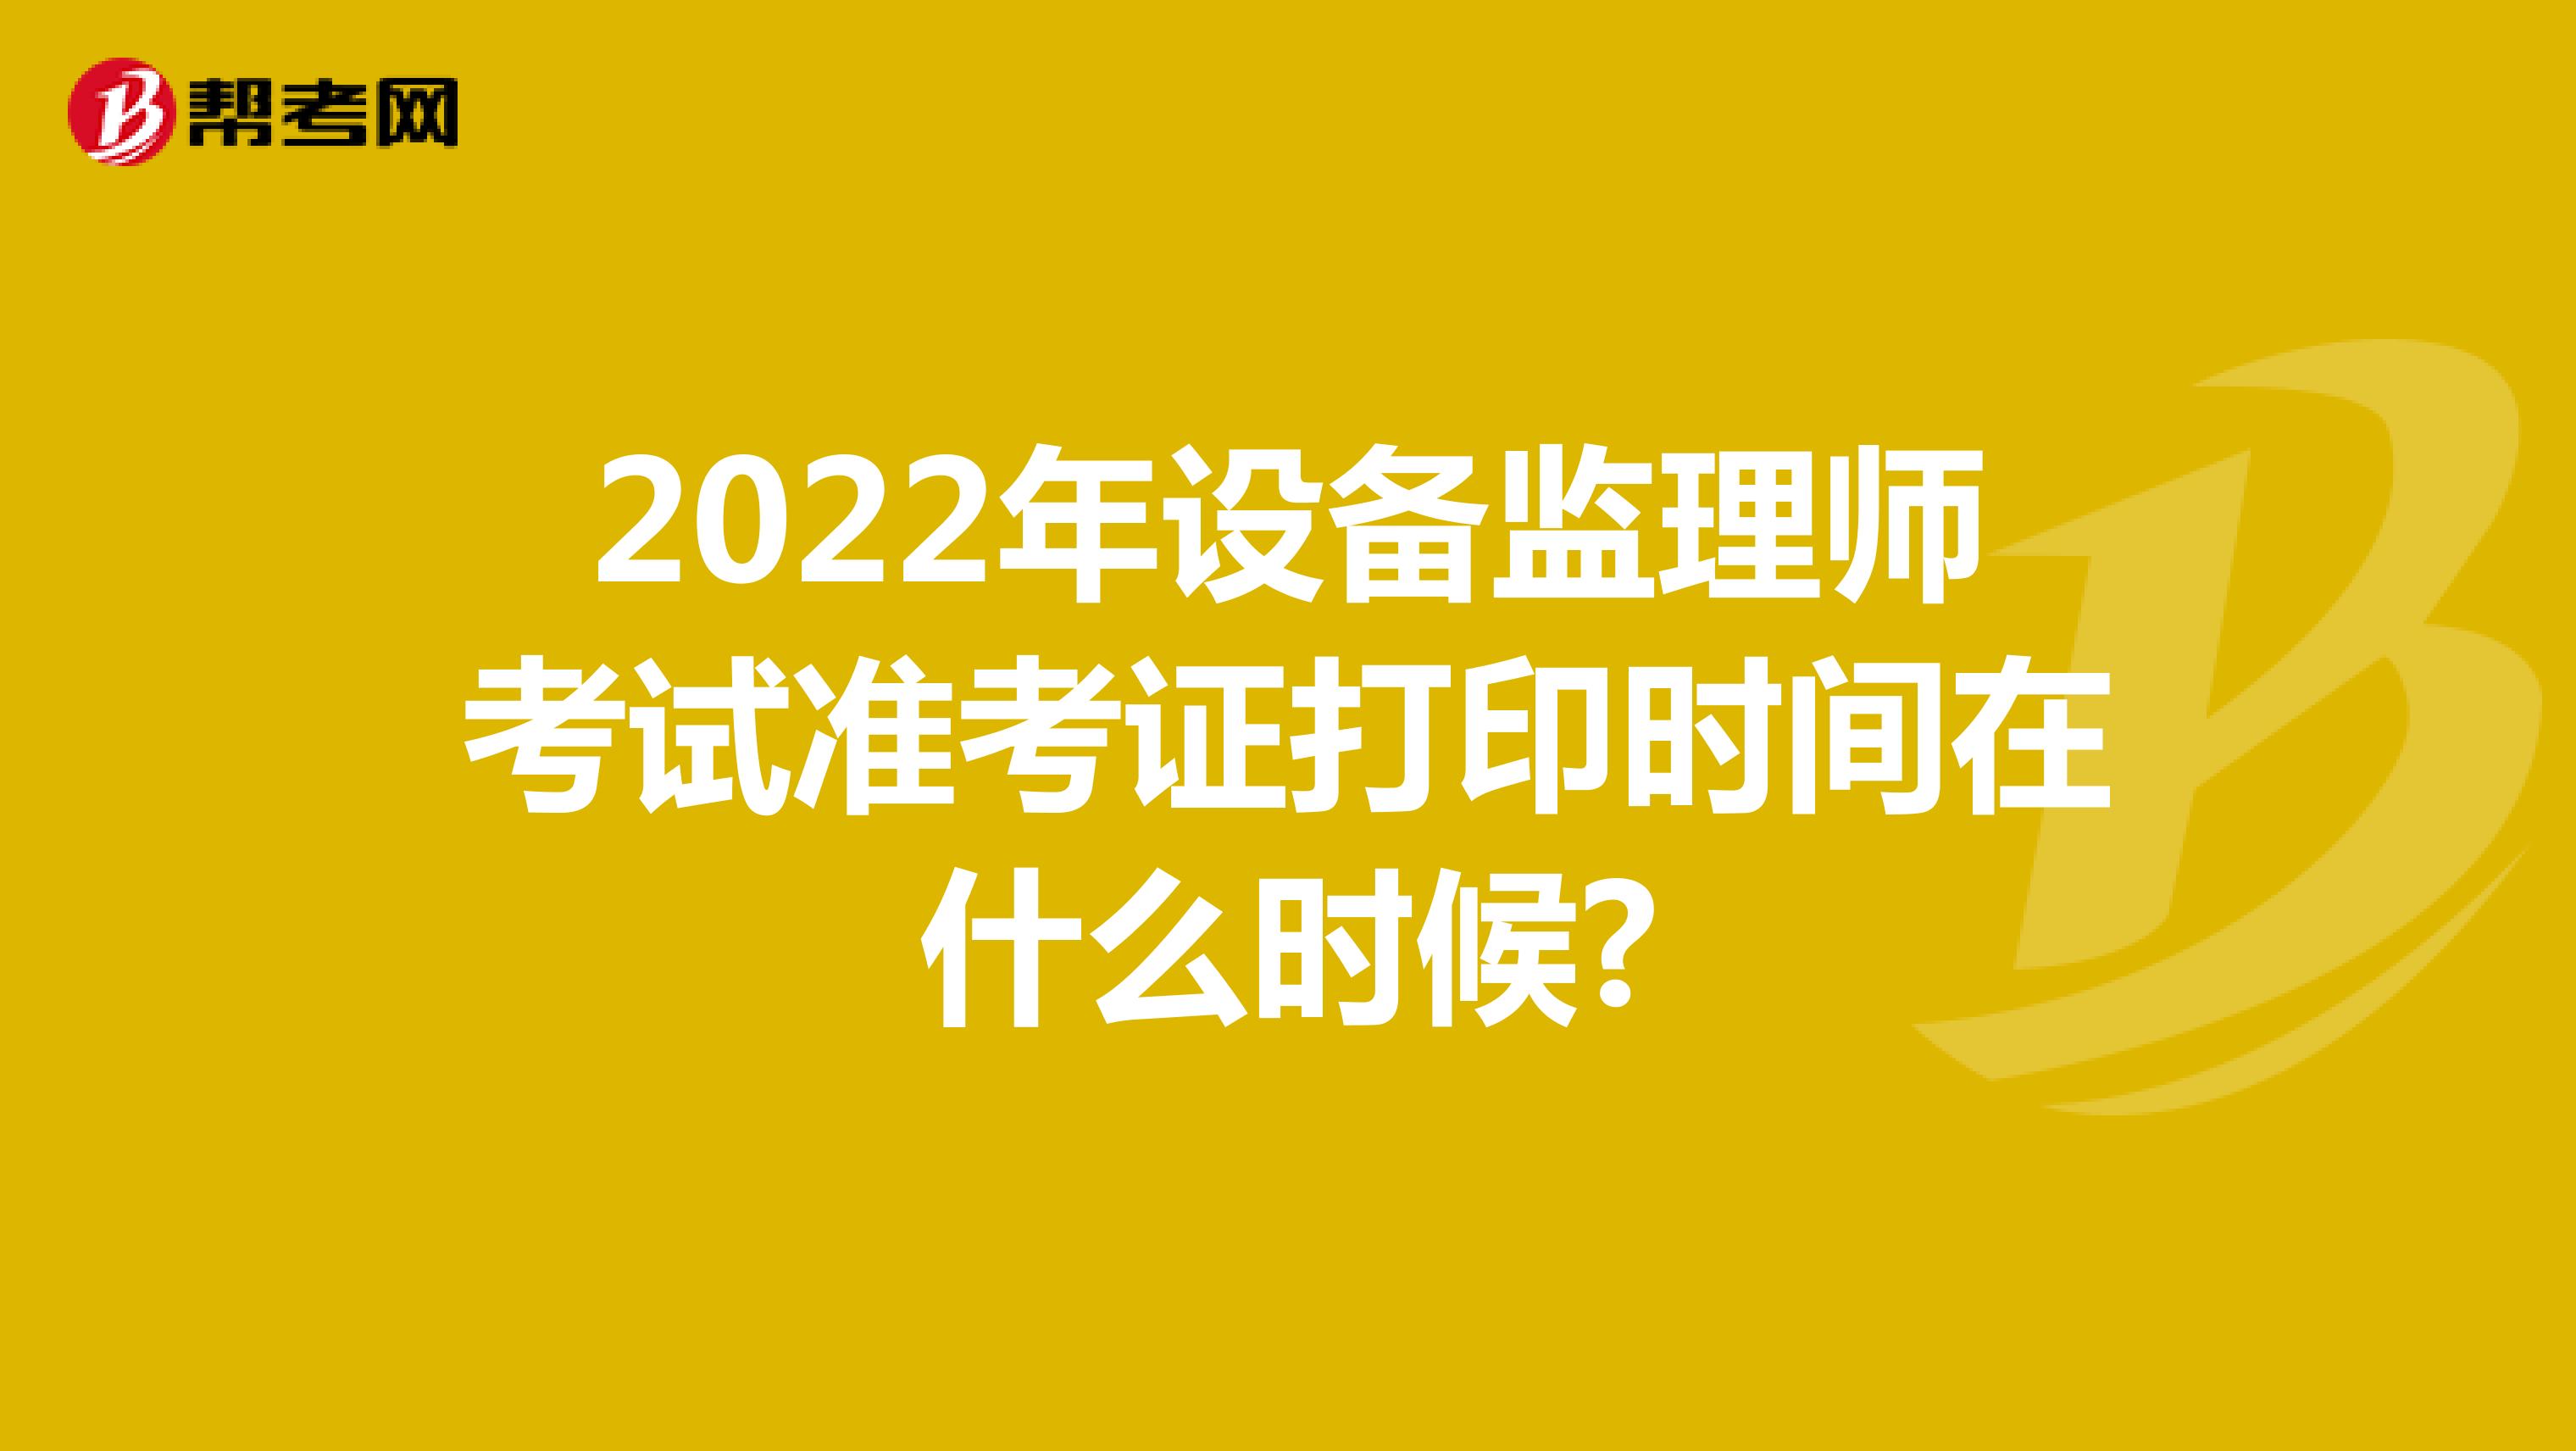 2022年设备监理师考试准考证打印时间在什么时候?